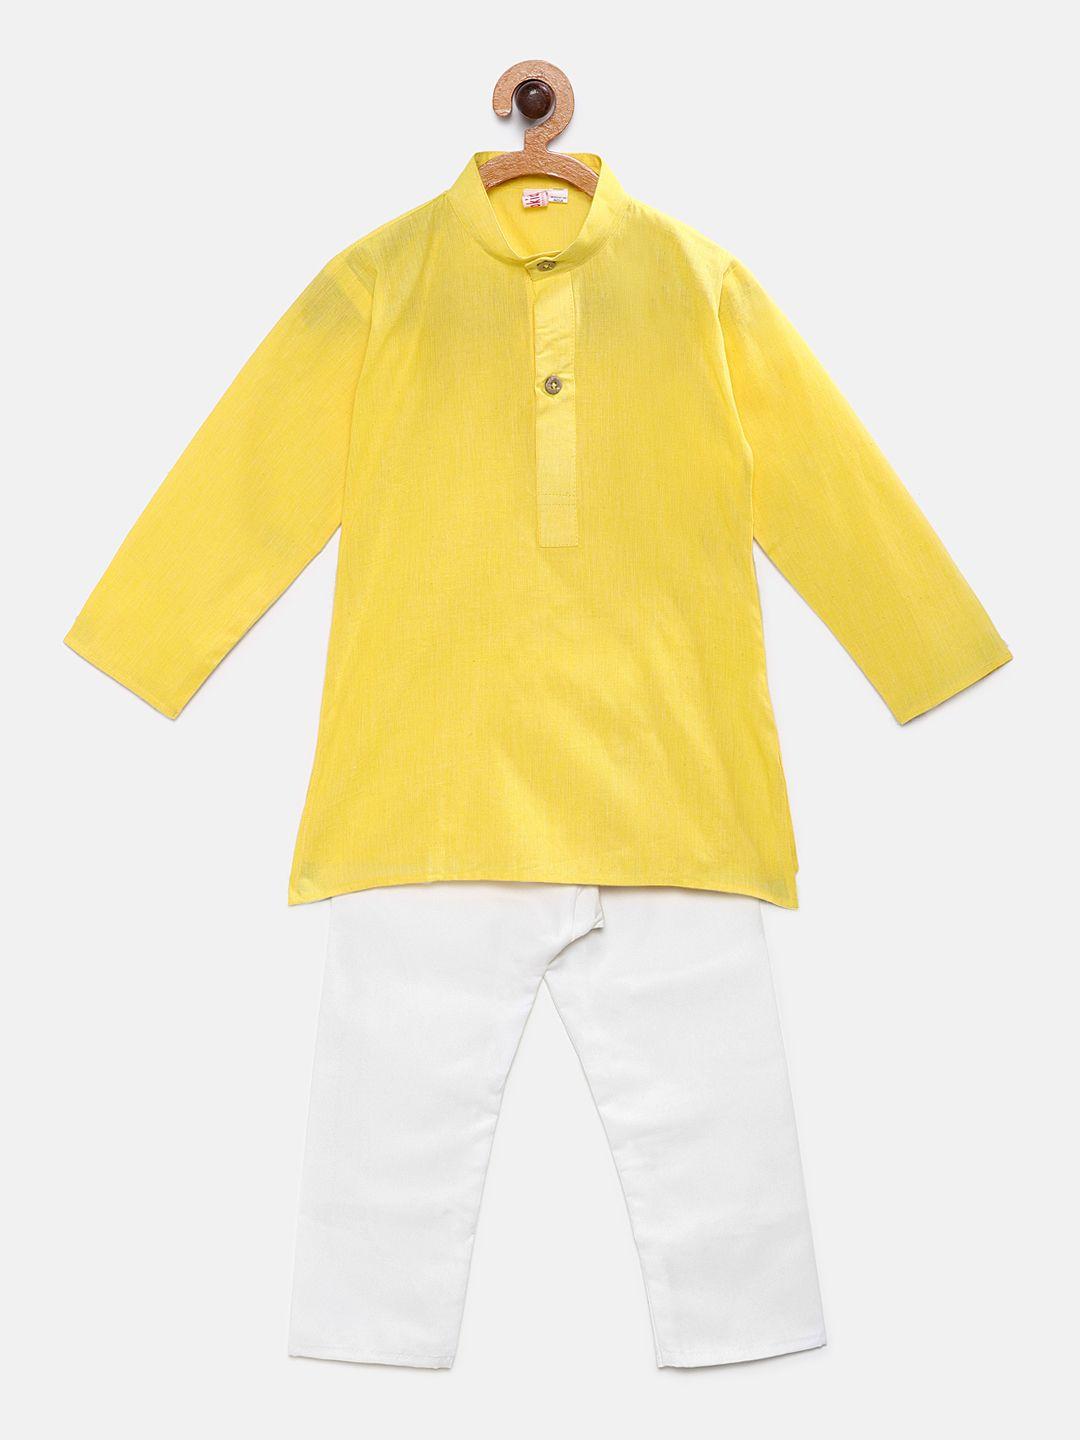 ridokidz boys yellow & white solid kurta with pyjamas